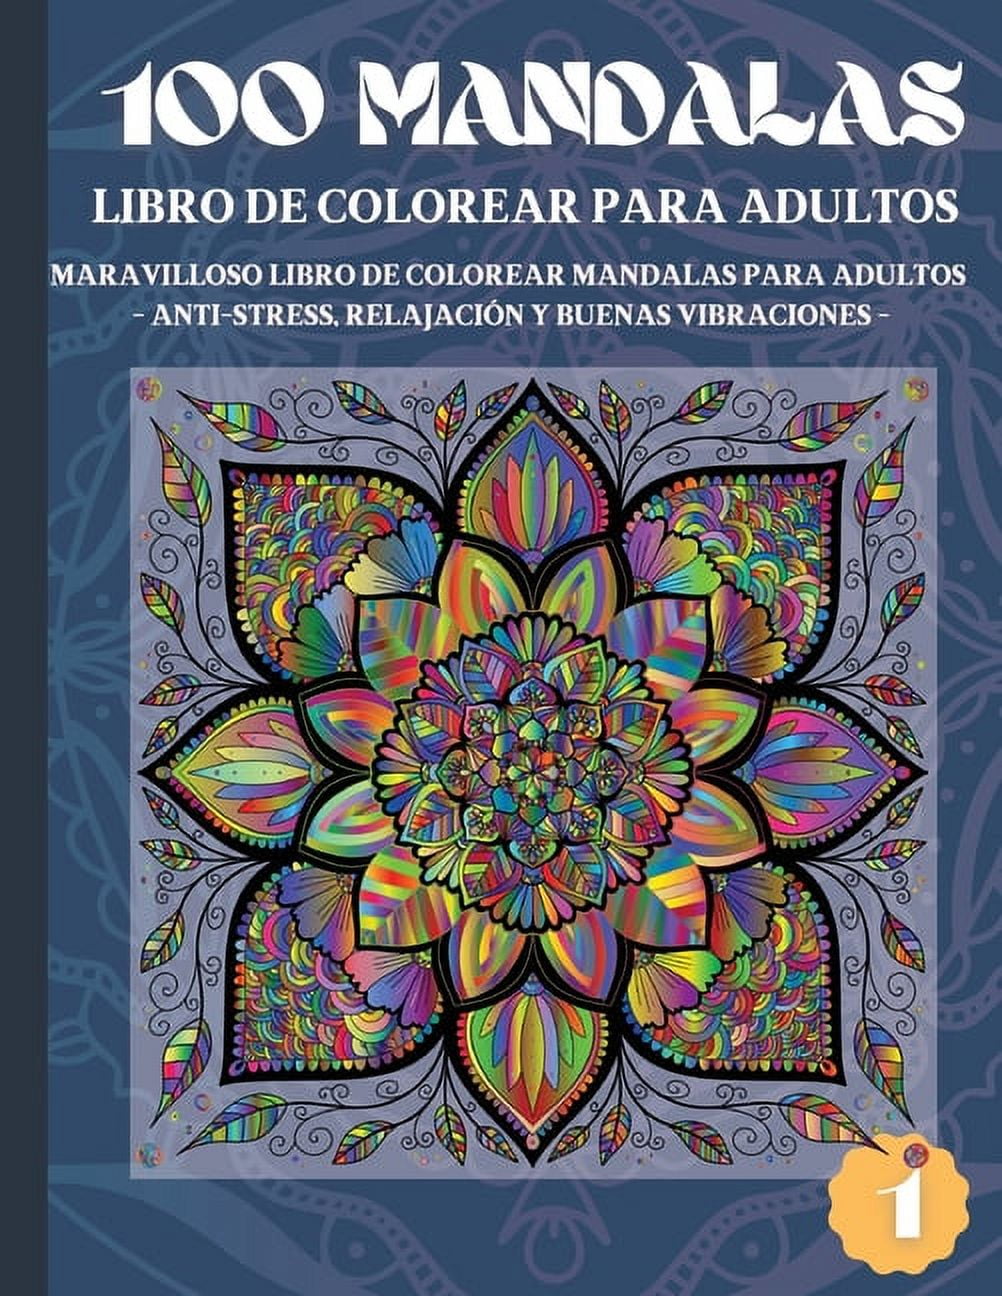 100 Mandalas Libro de Colorear para Adultos : Maravilloso Libro de Colorear  Mandalas para Adultos - Anti-Stress, Relajación y Buenas Vibraciones (1)  (Paperback) 